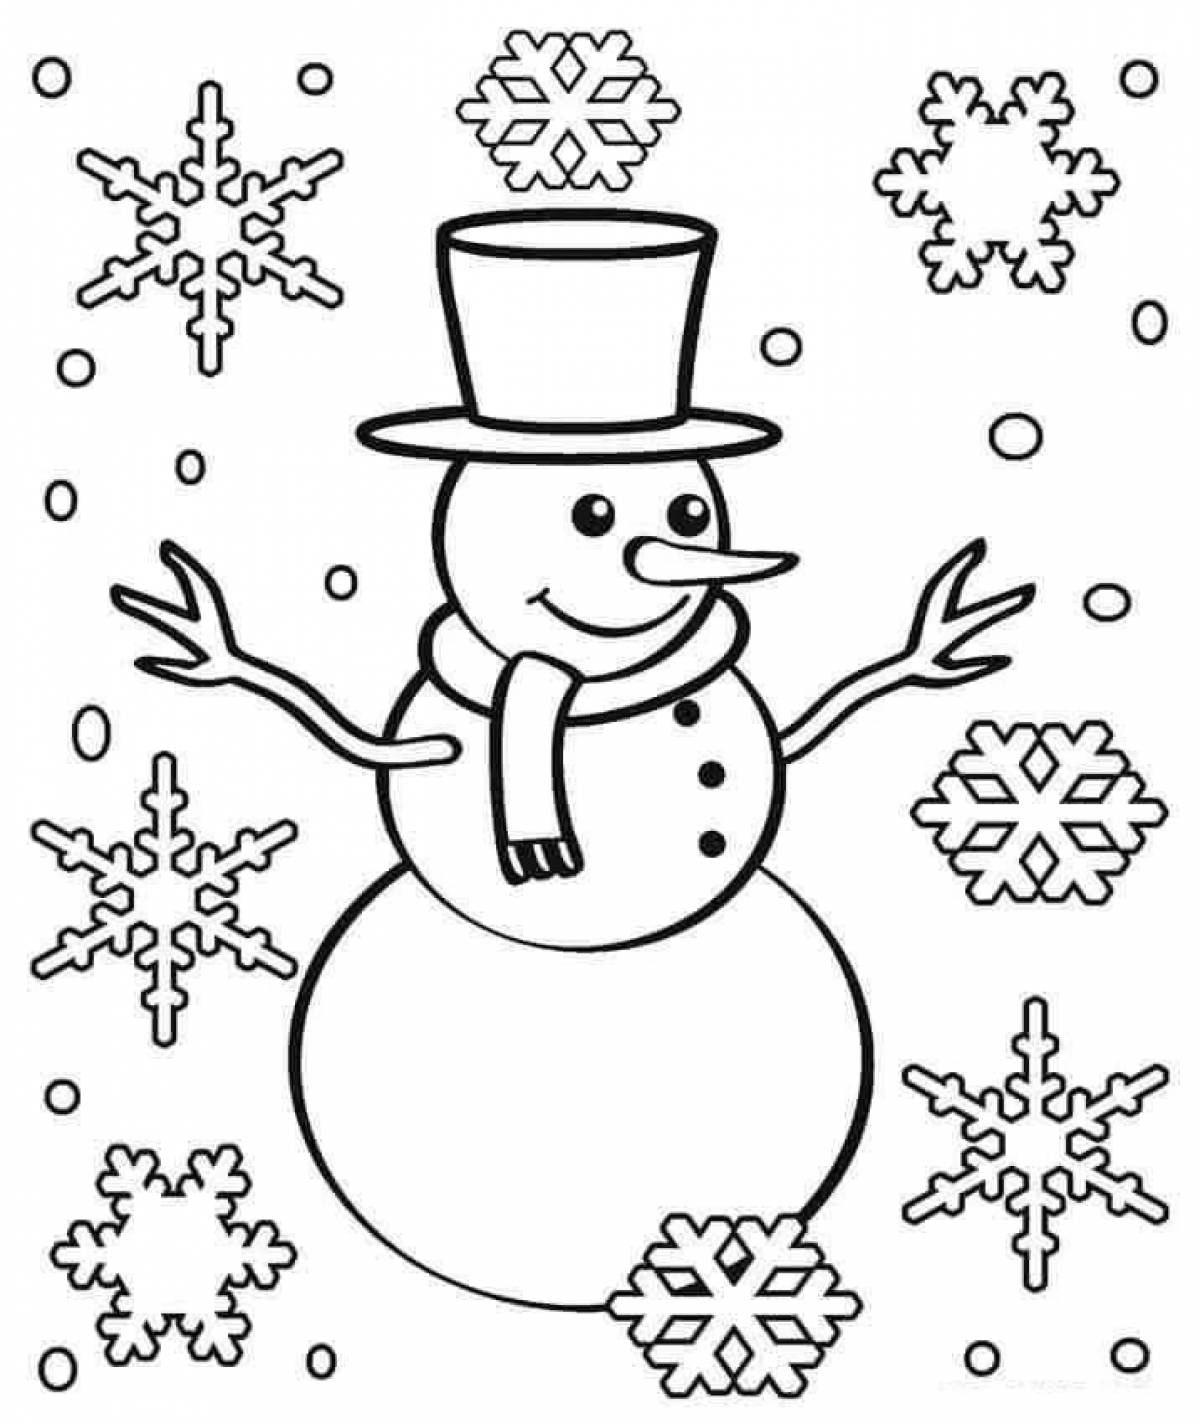 Юмористическая раскраска снеговик для детей 4-5 лет